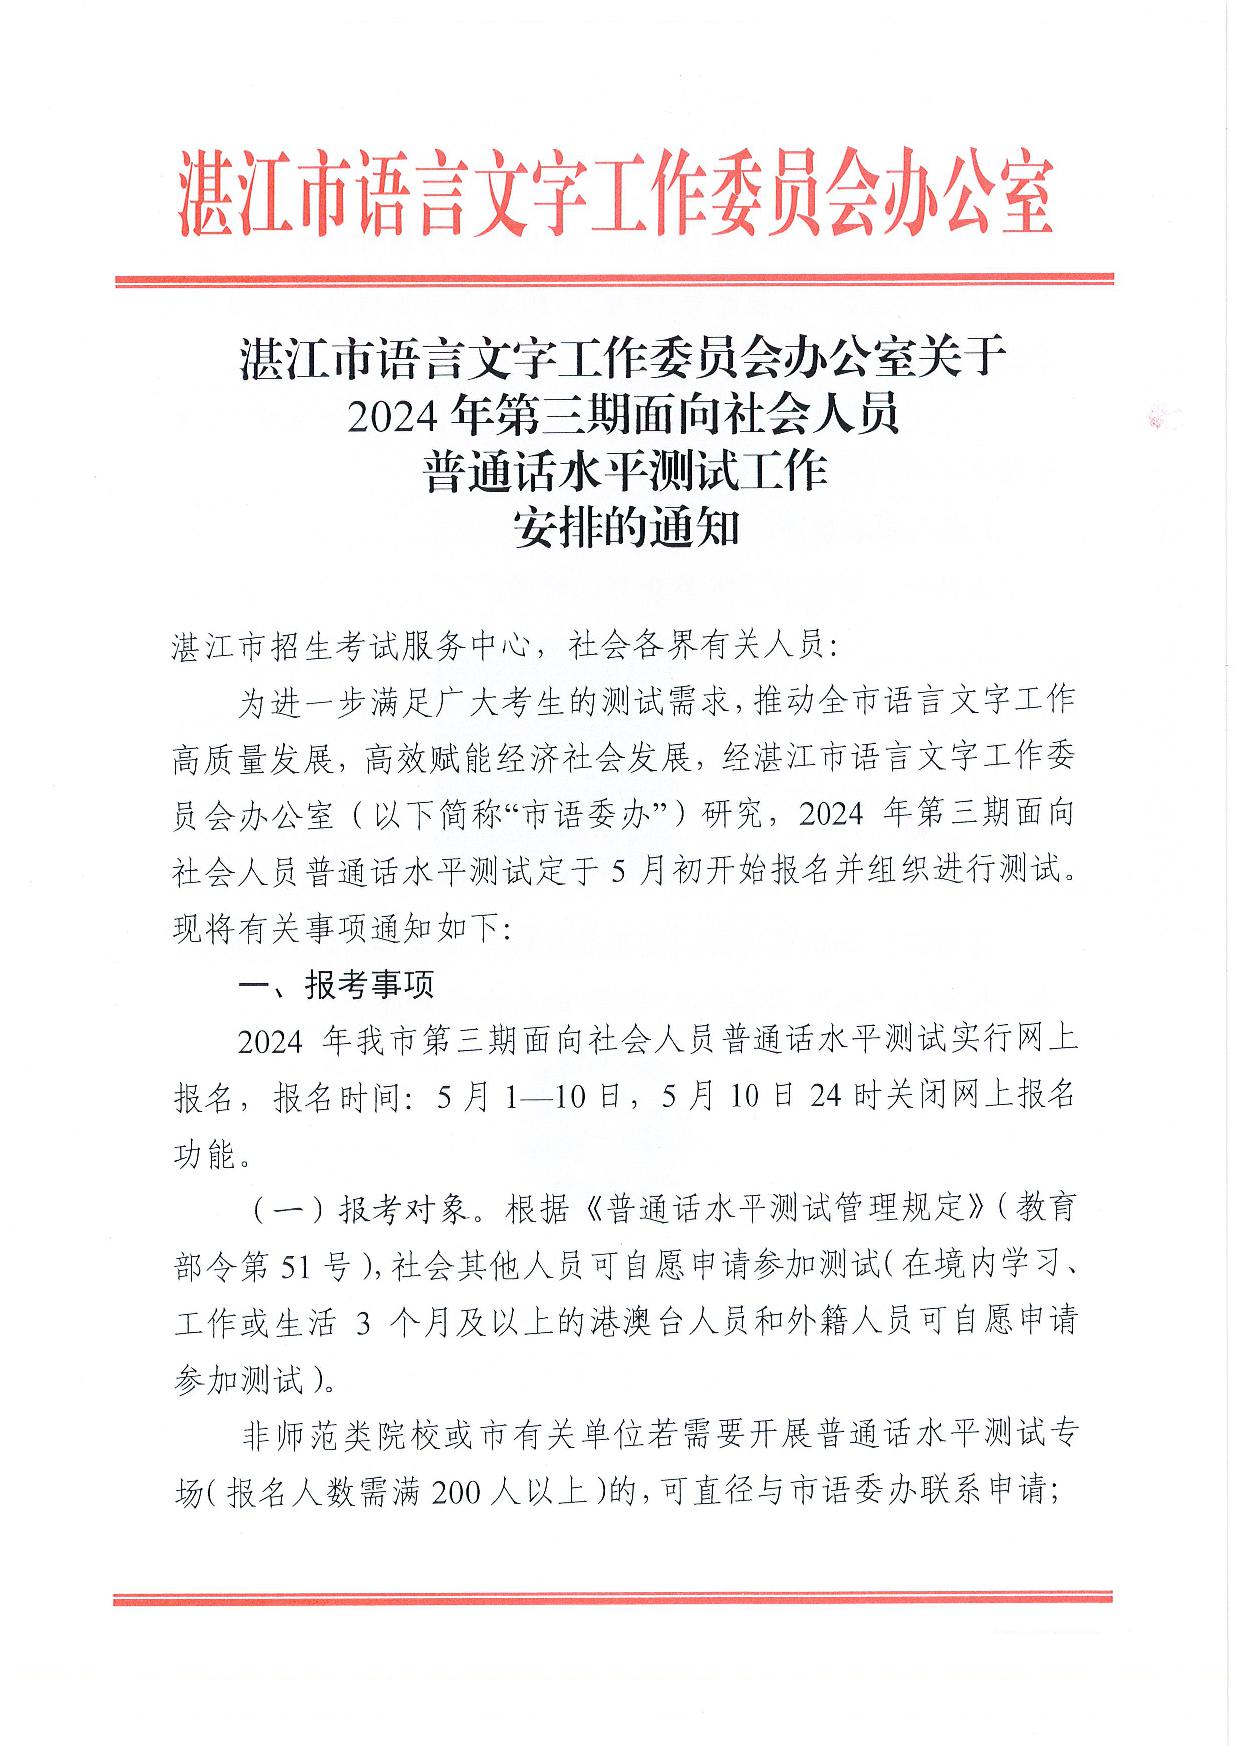 湛江市语言文字工作委员会办公室关于2024年第三期面向社会人员普通话水平测试工作安排的通知-001.jpg